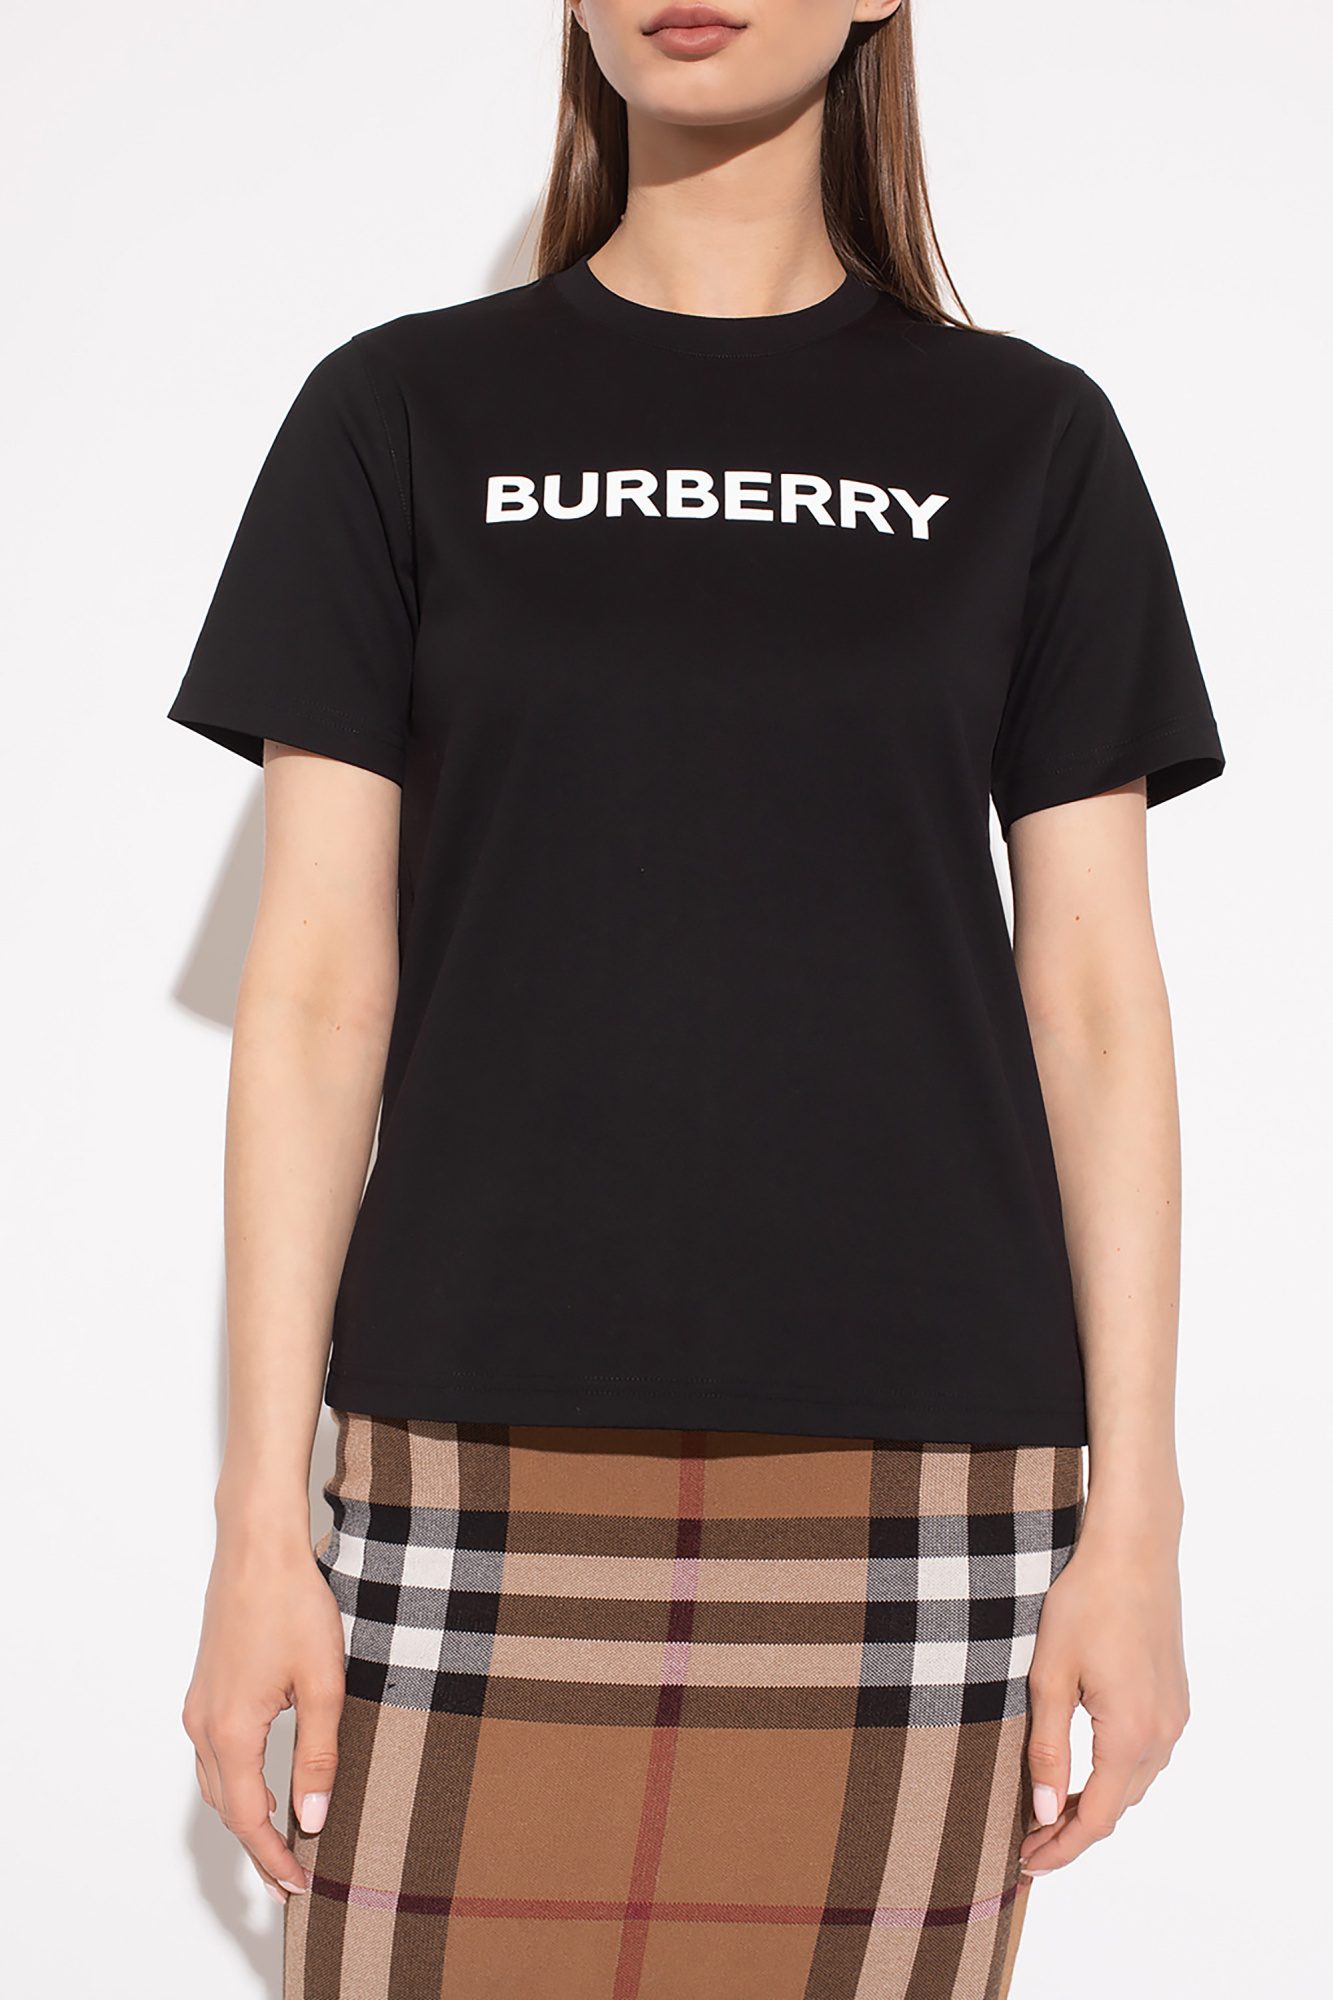 burberry item ‘Margot’ T-shirt